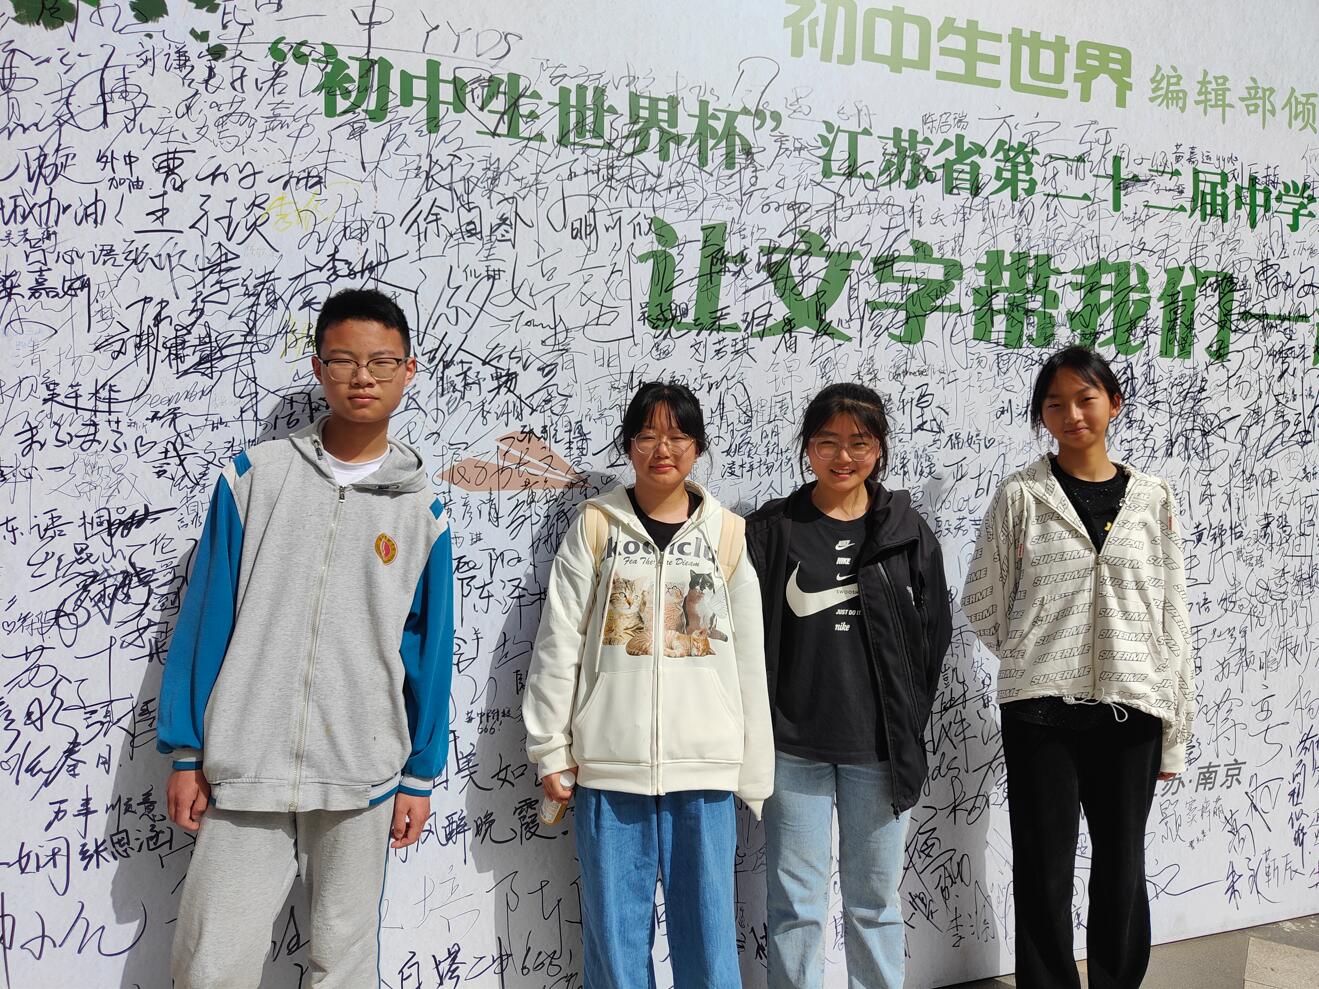 灌南县实验中学在江苏省第二十二届中学生阅读与写作大赛中荣获佳绩